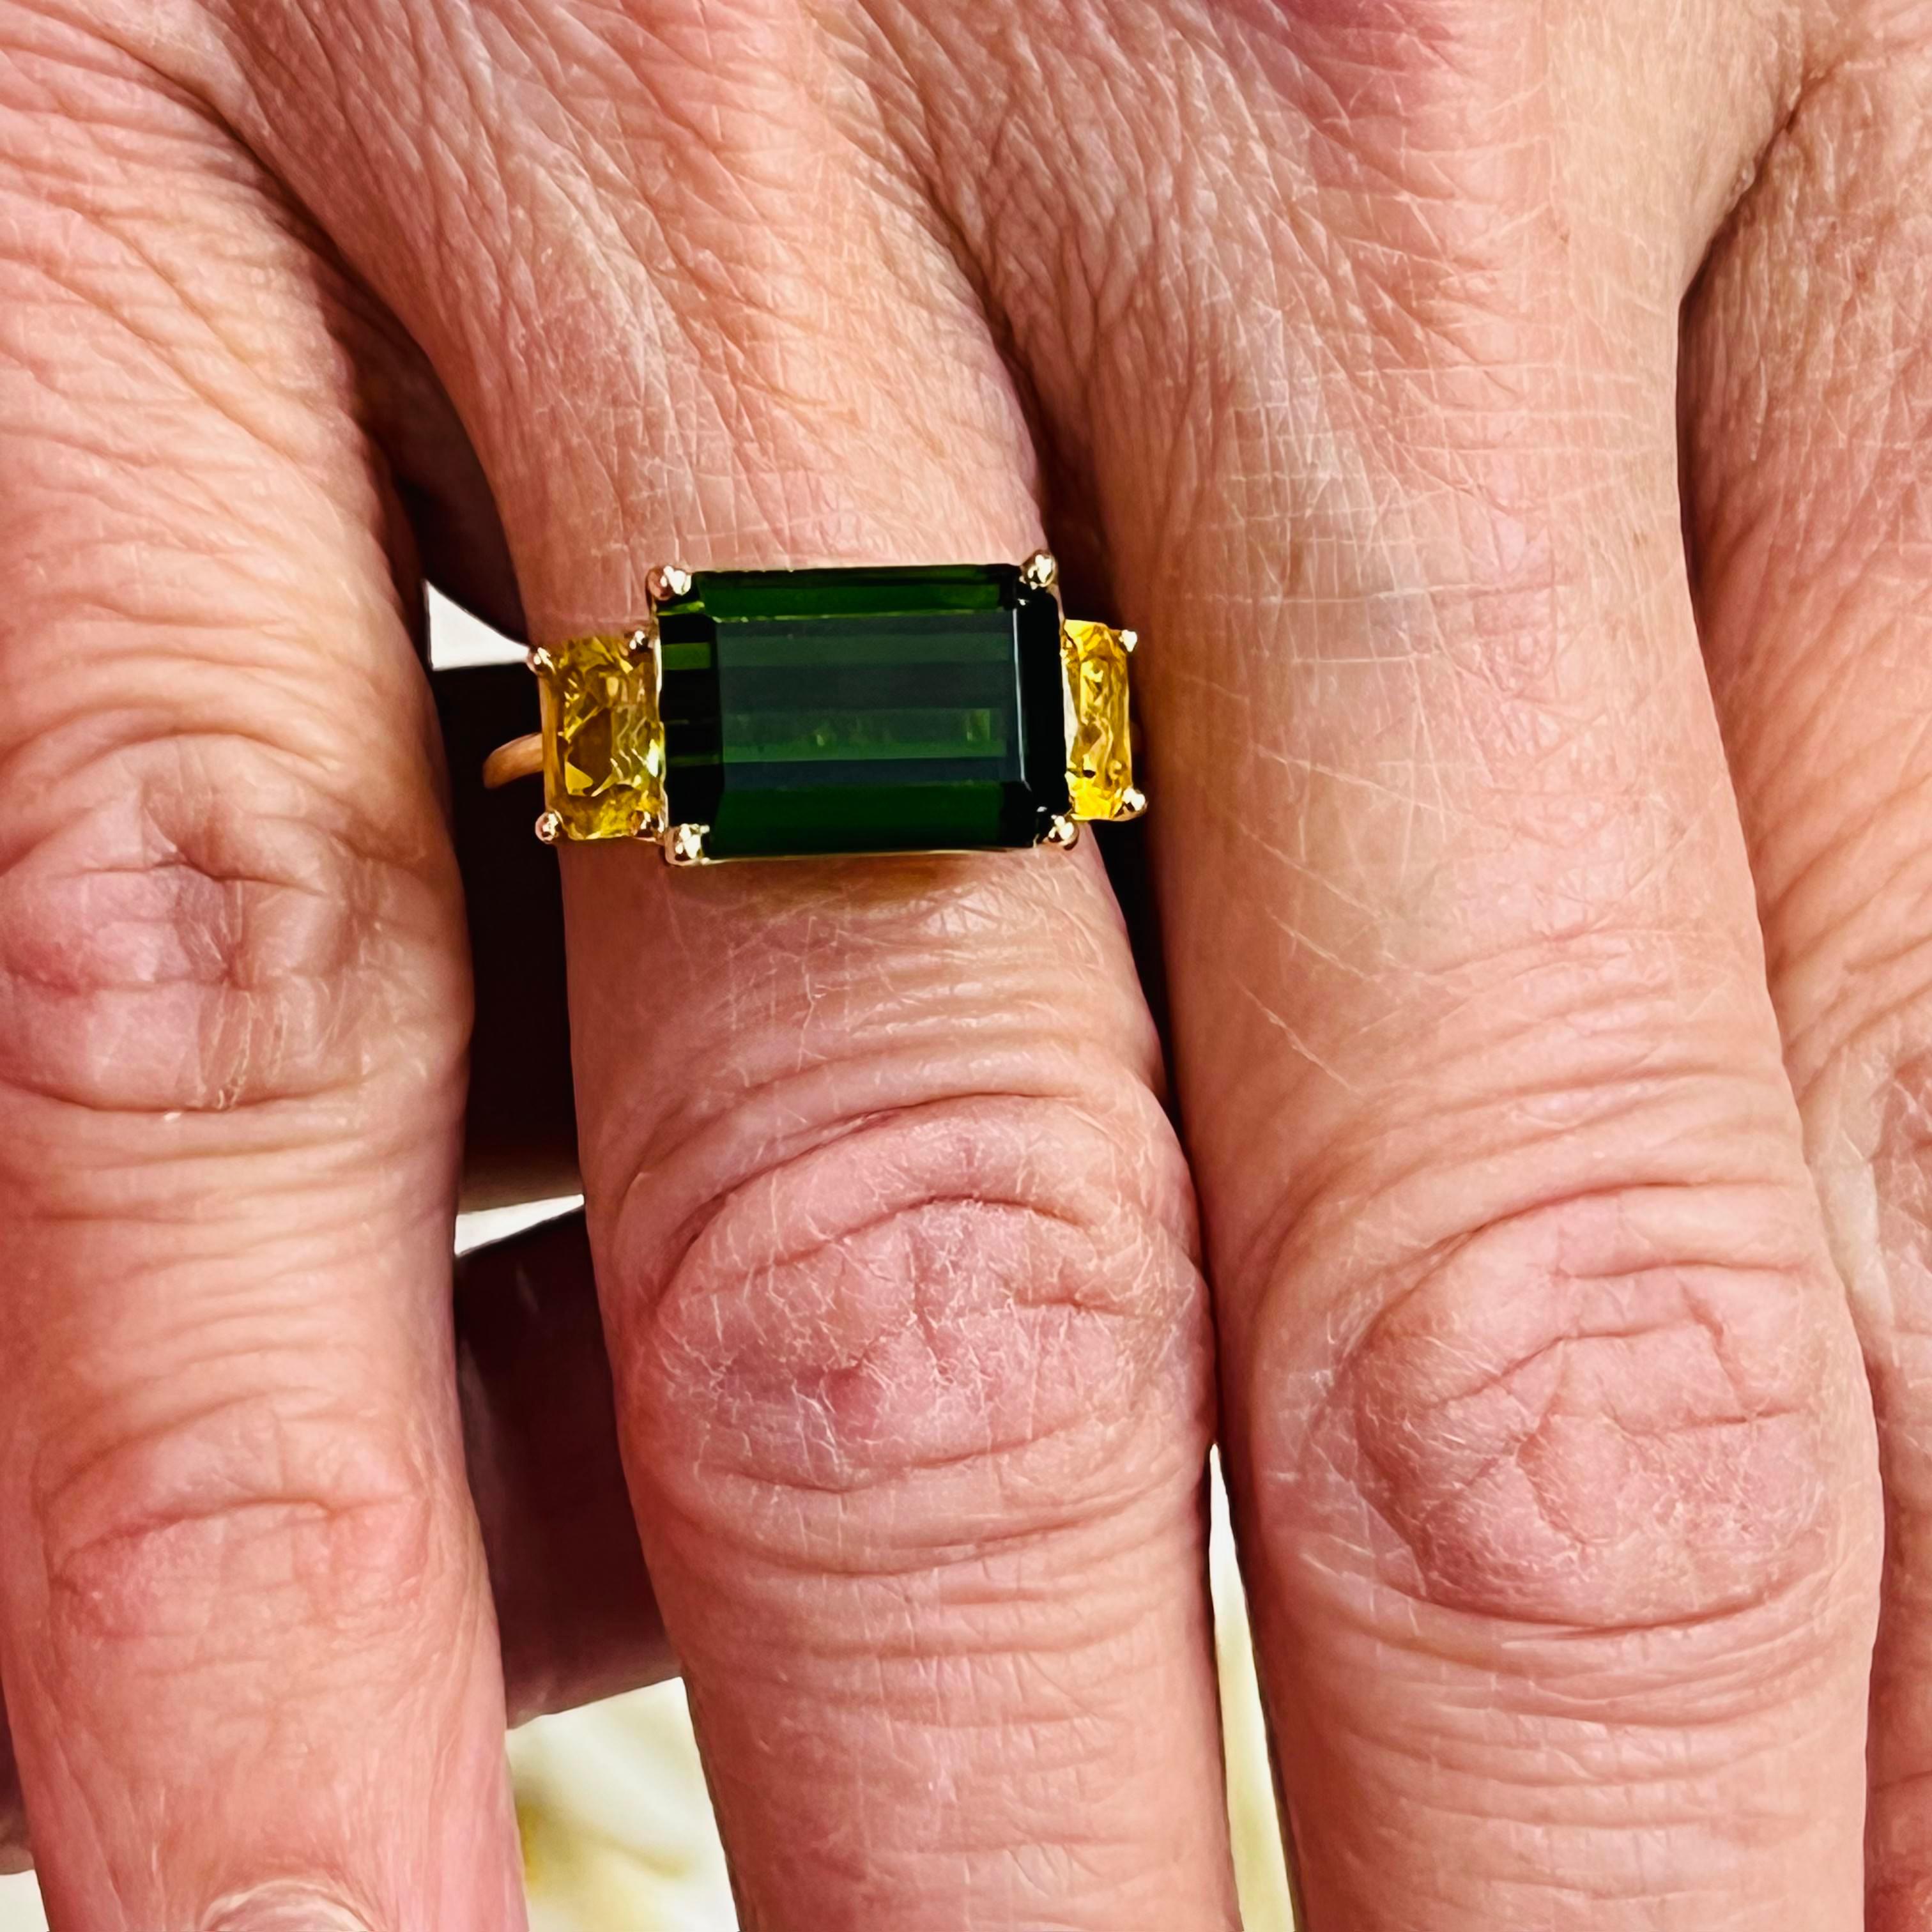 Natürliche fein facettiert Qualität Turmalin Diamant Ring Größe 7 14 Y Gold 6,15 TCW zertifiziert $5.975 219225

Dies ist ein einzigartiges, maßgeschneidertes, glamouröses Schmuckstück!

Nichts sagt mehr 